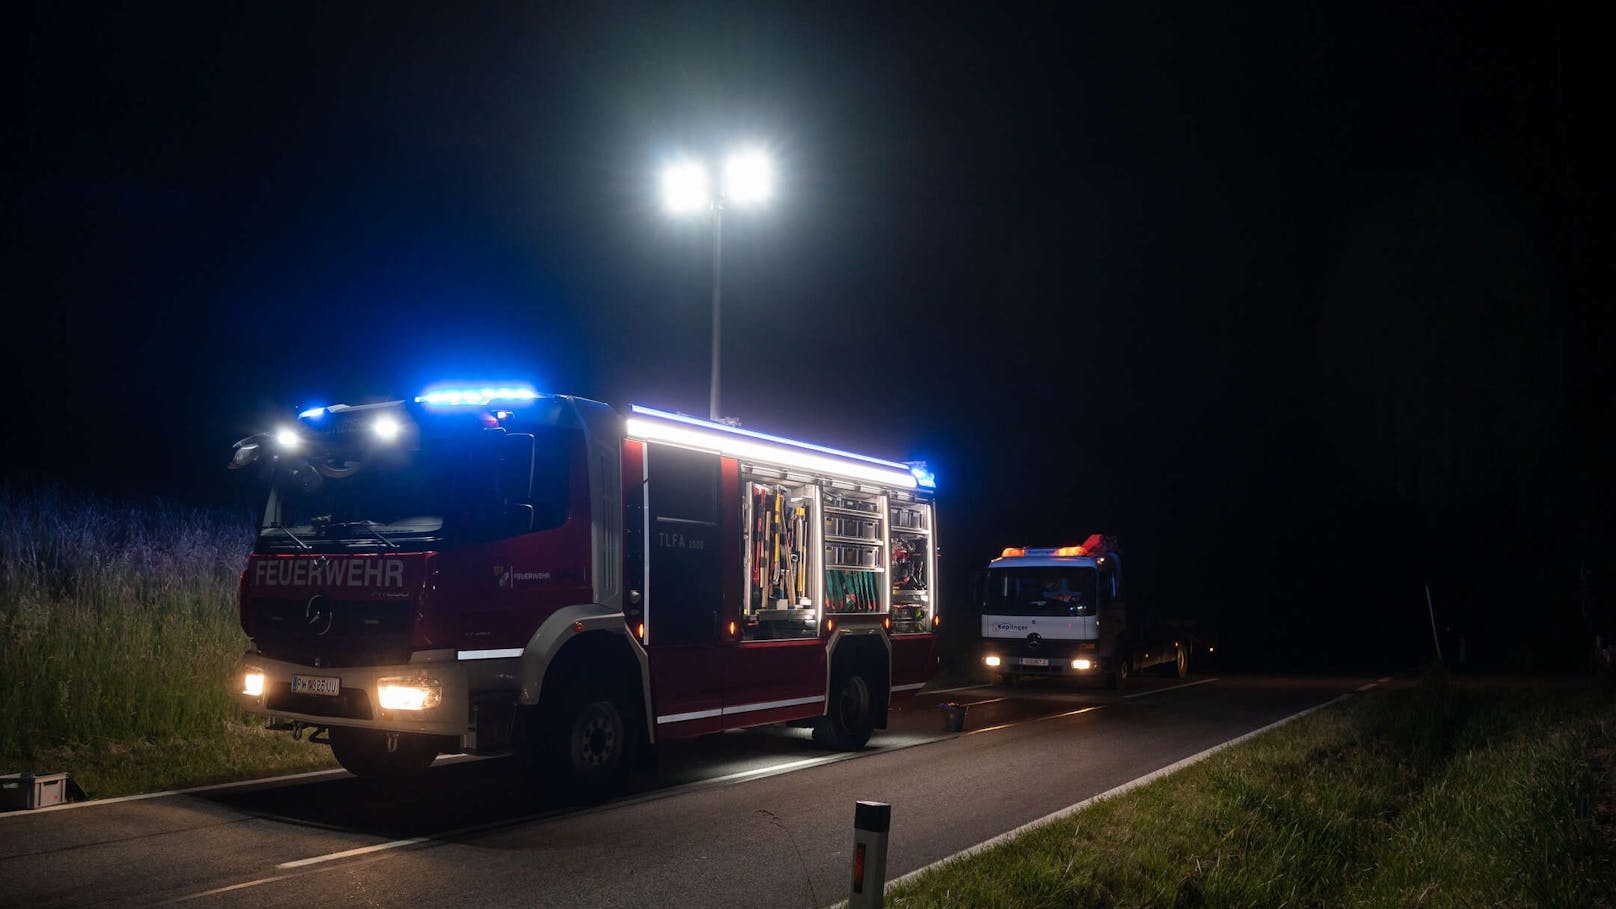 Tragödie am Montagabend in Oberösterreich! Bei einem Frontal-Zusammenstoß  in Altenberg bei Linz sind zwei Personen ums Leben gekommen. Für einen 36-Jährigen und eine 16-Jährige kam dabei jede Hilfe zu spät.